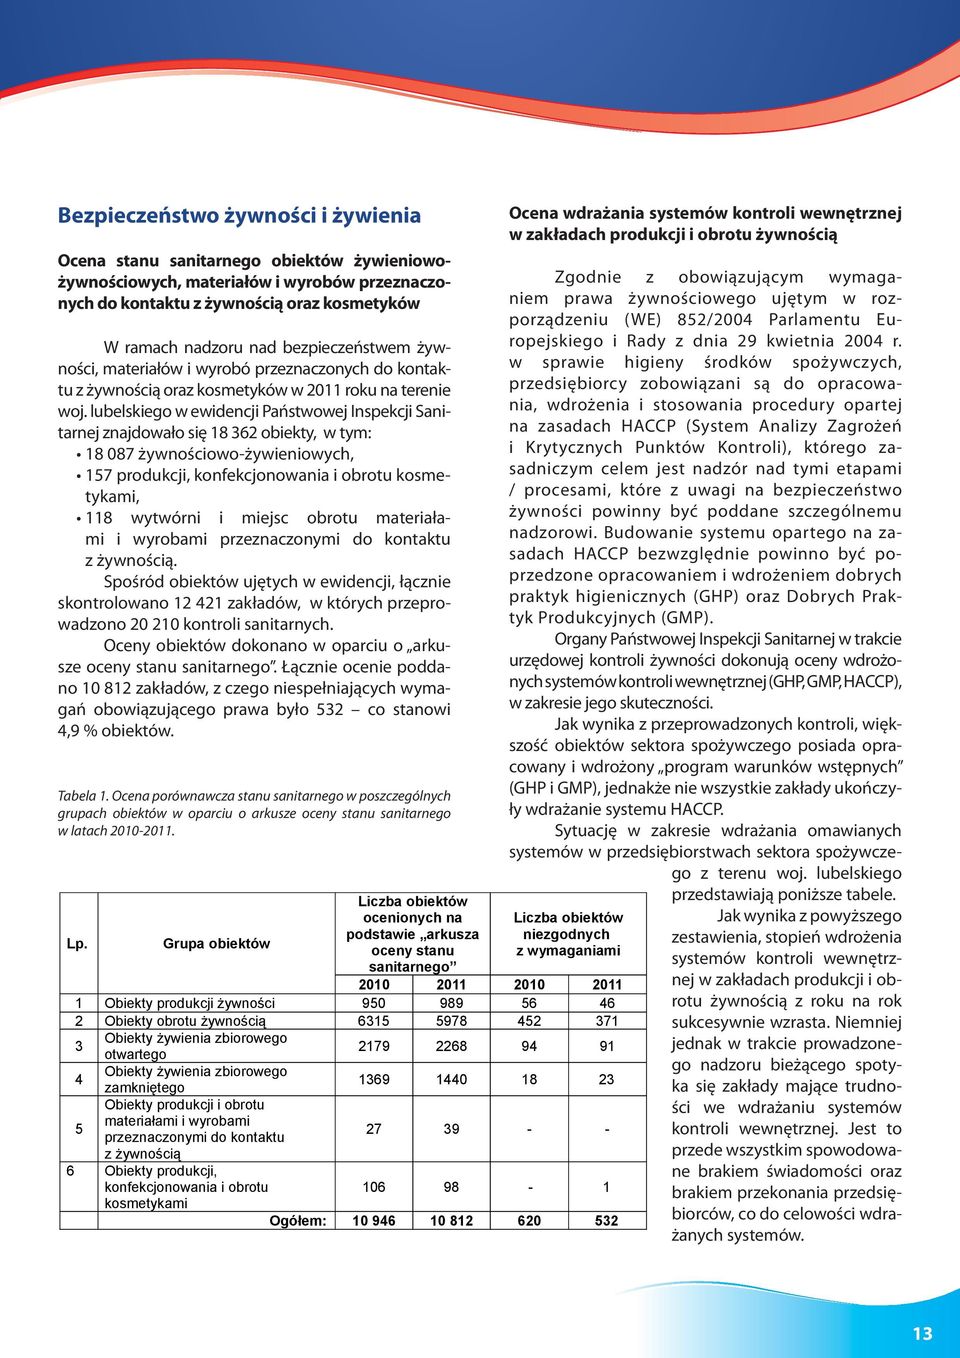 lubelskiego w ewidencji Państwowej Inspekcji Sanitarnej znajdowało się 18 362 obiekty, w tym: 18 087 żywnościowo-żywieniowych, 157 produkcji, konfekcjonowania i obrotu kosmetykami, 118 wytwórni i